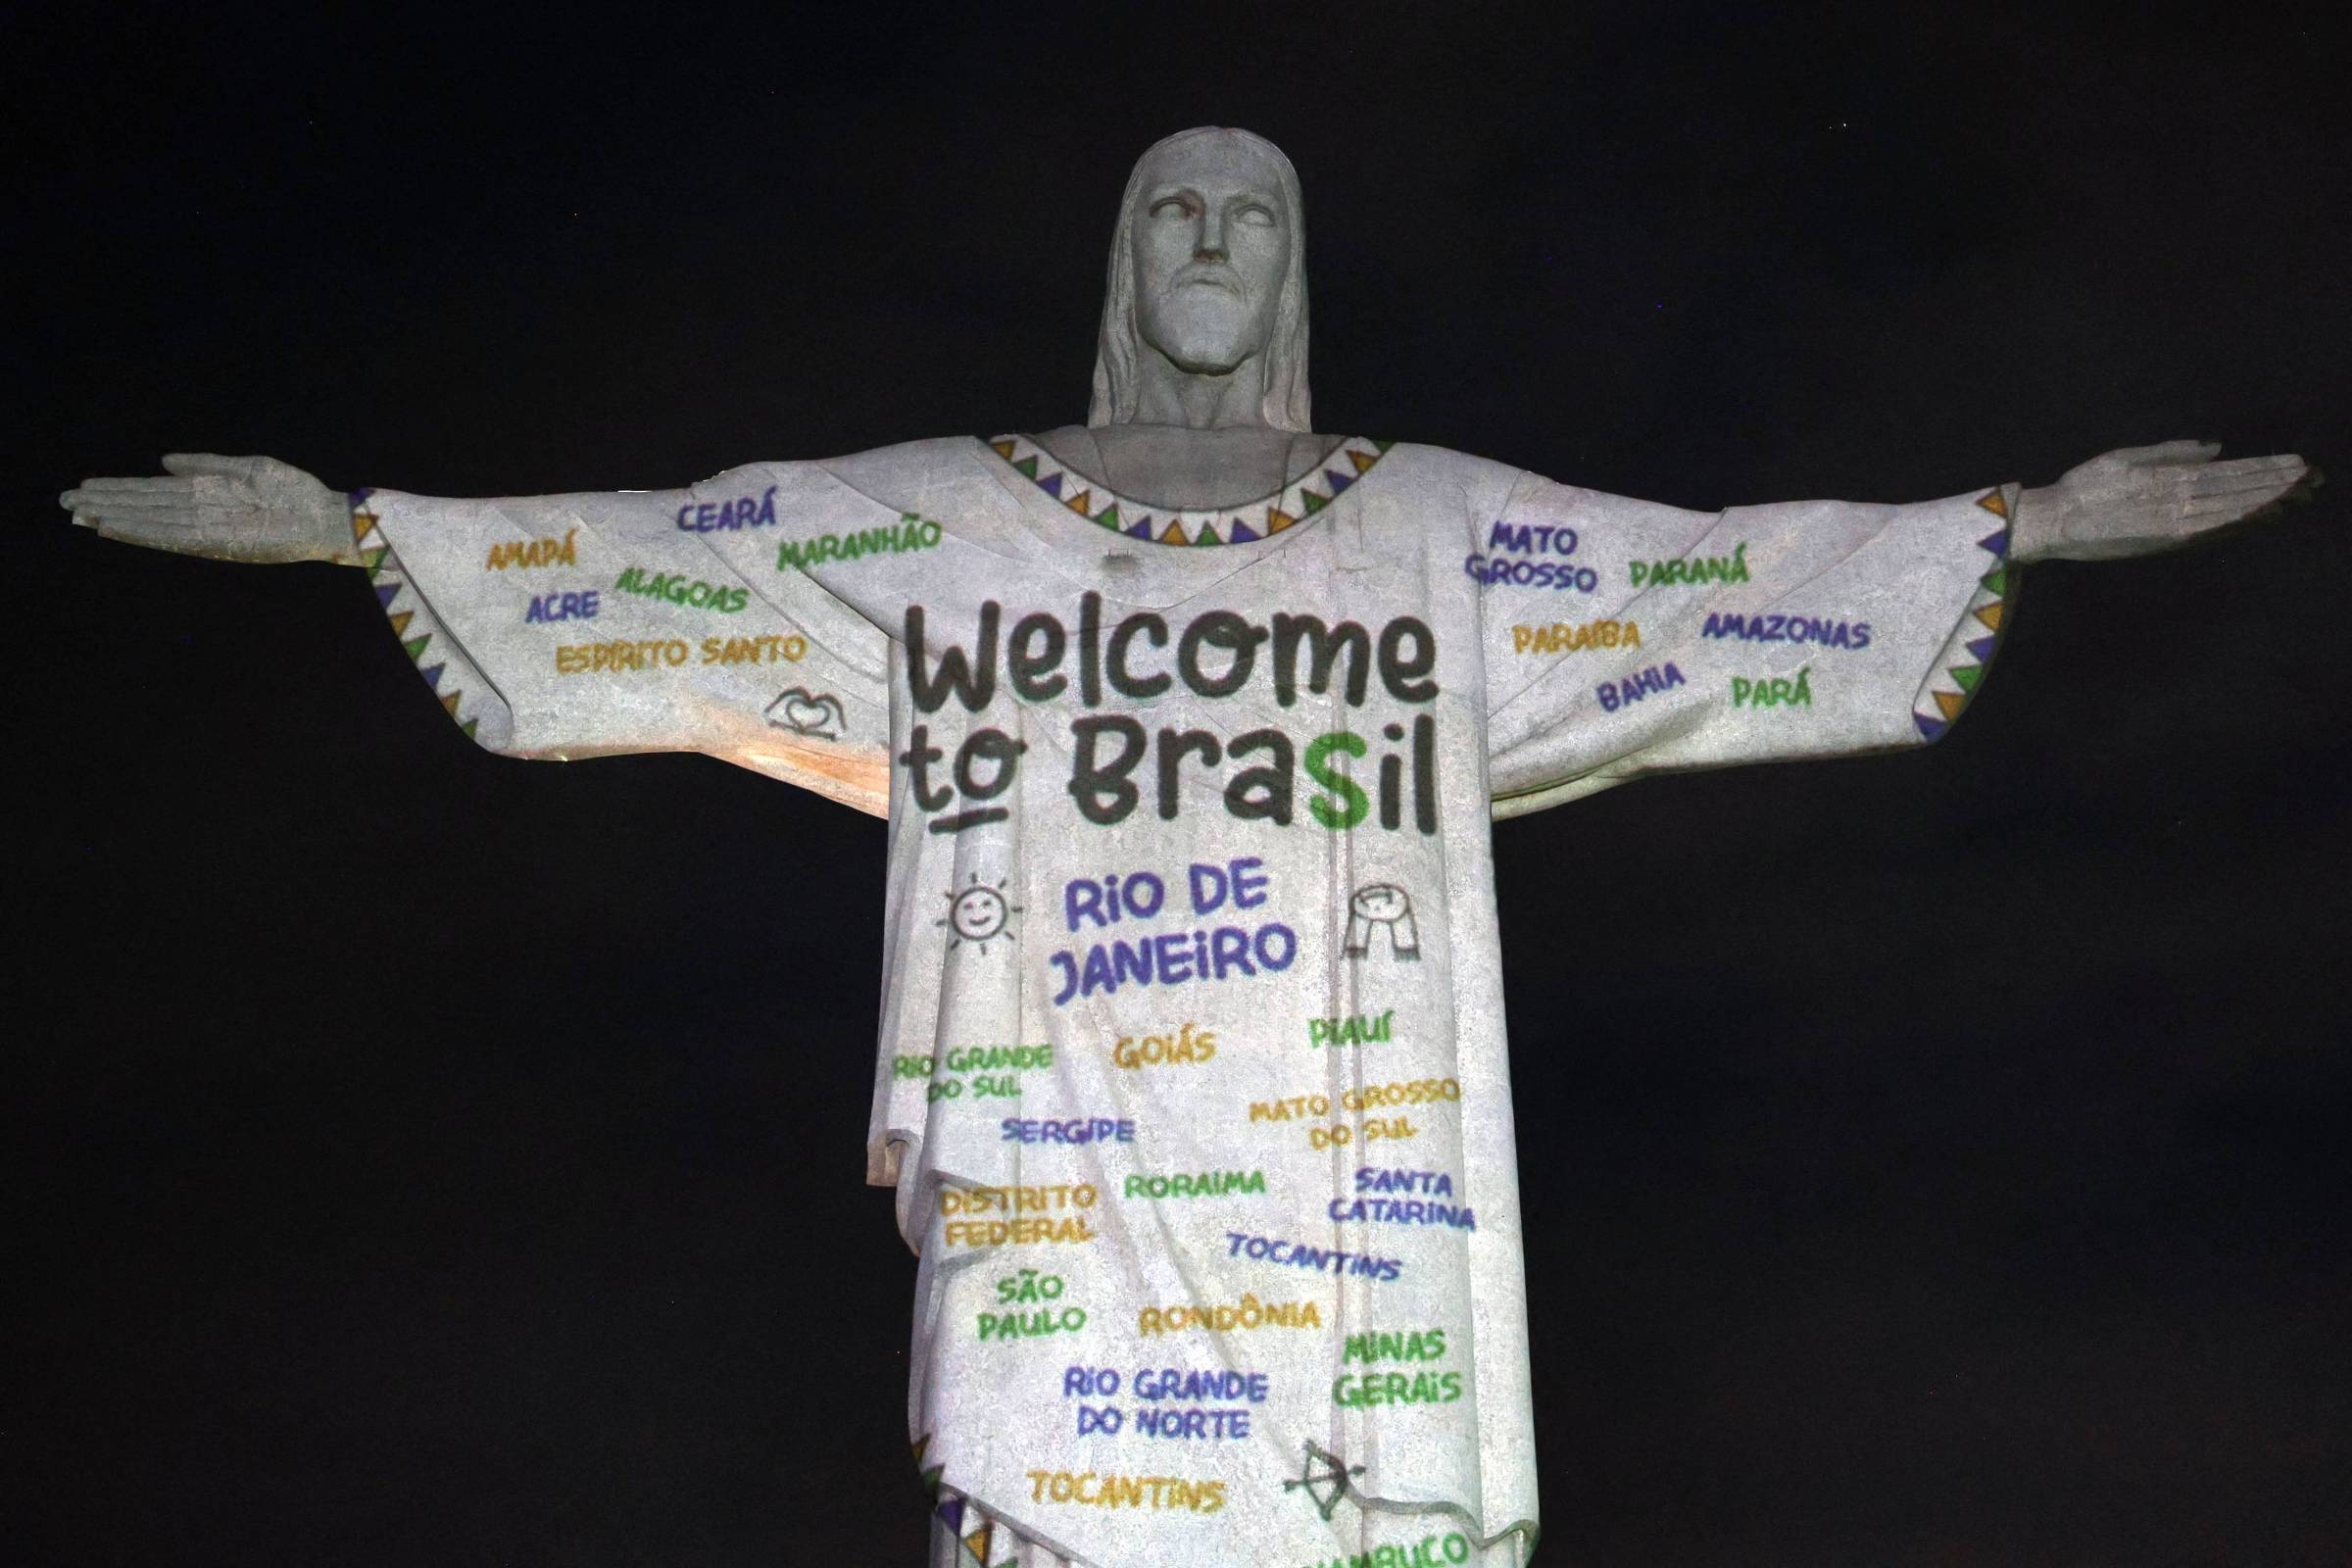 Fãs do Rio de Janeiro homenageiam Taylor Swift com projeções no Cristo Redentor e na roda gigante Yup Star